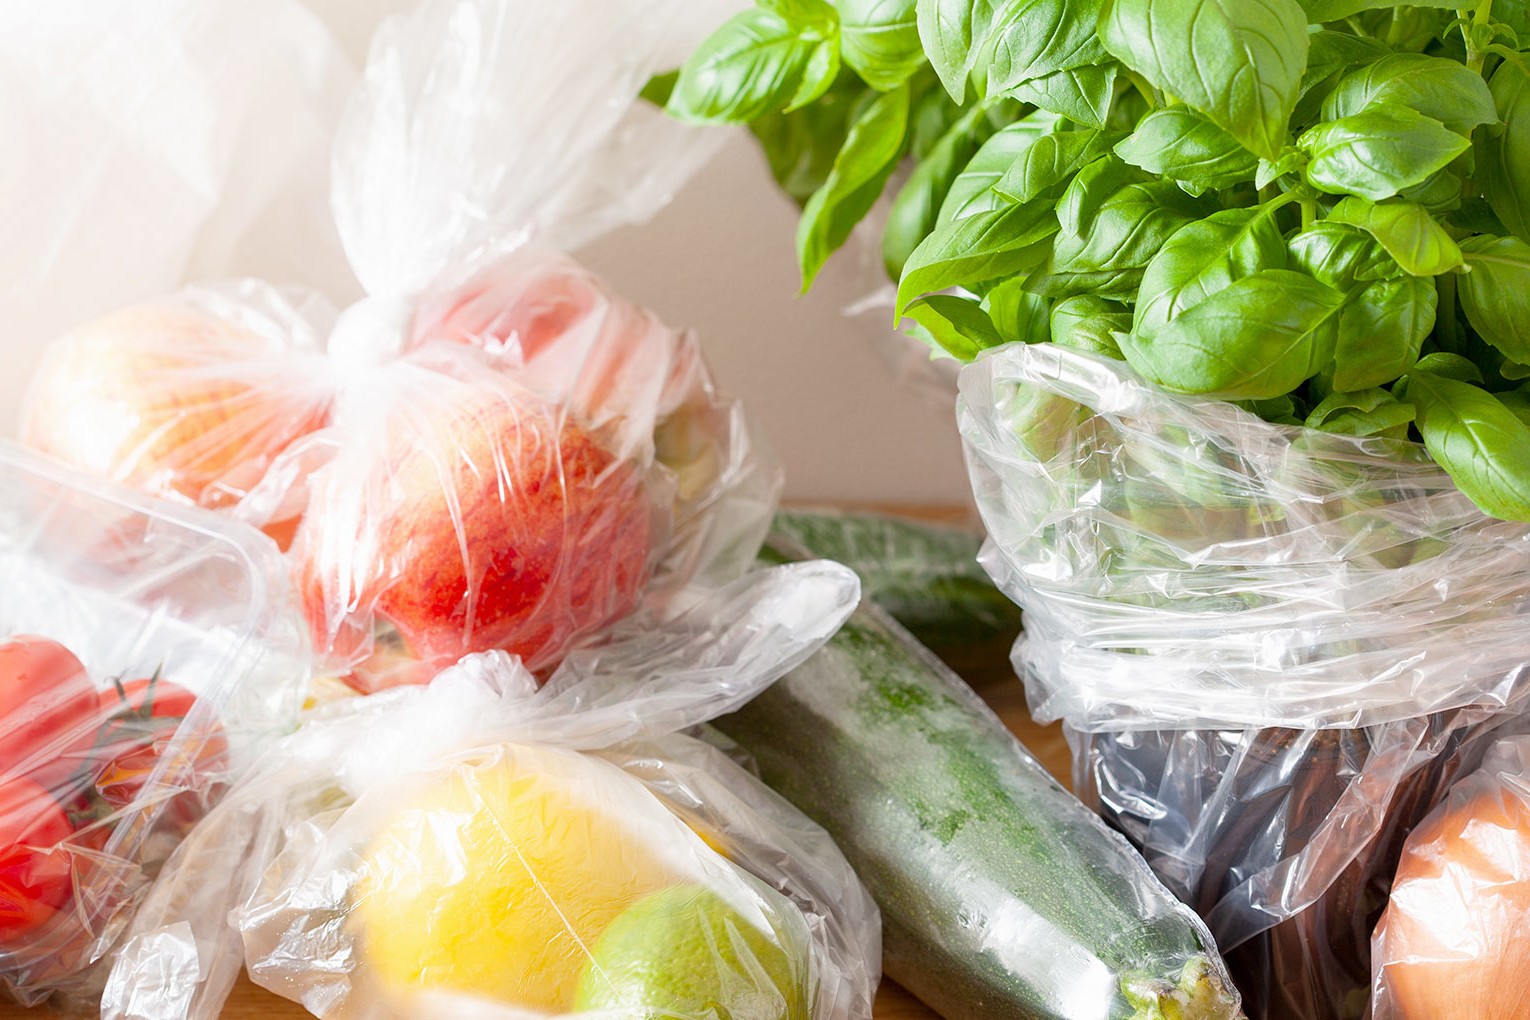 En la imagen aparecen frutas y verduras en bolsas de plásticos